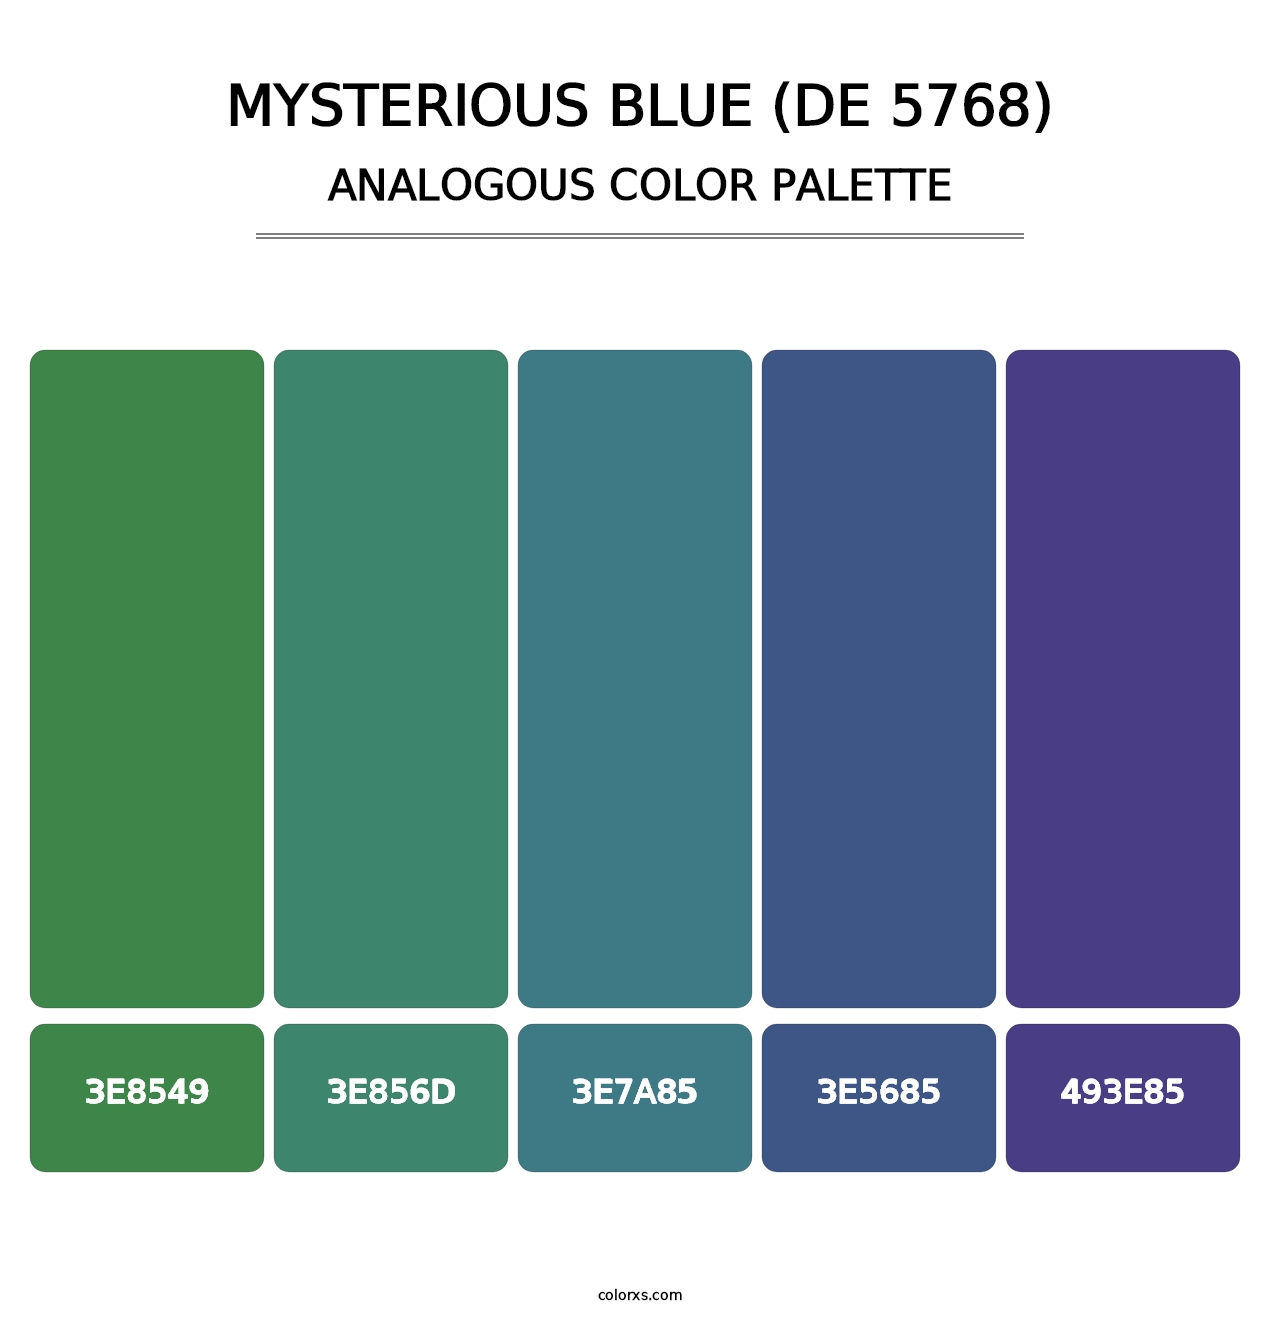 Mysterious Blue (DE 5768) - Analogous Color Palette